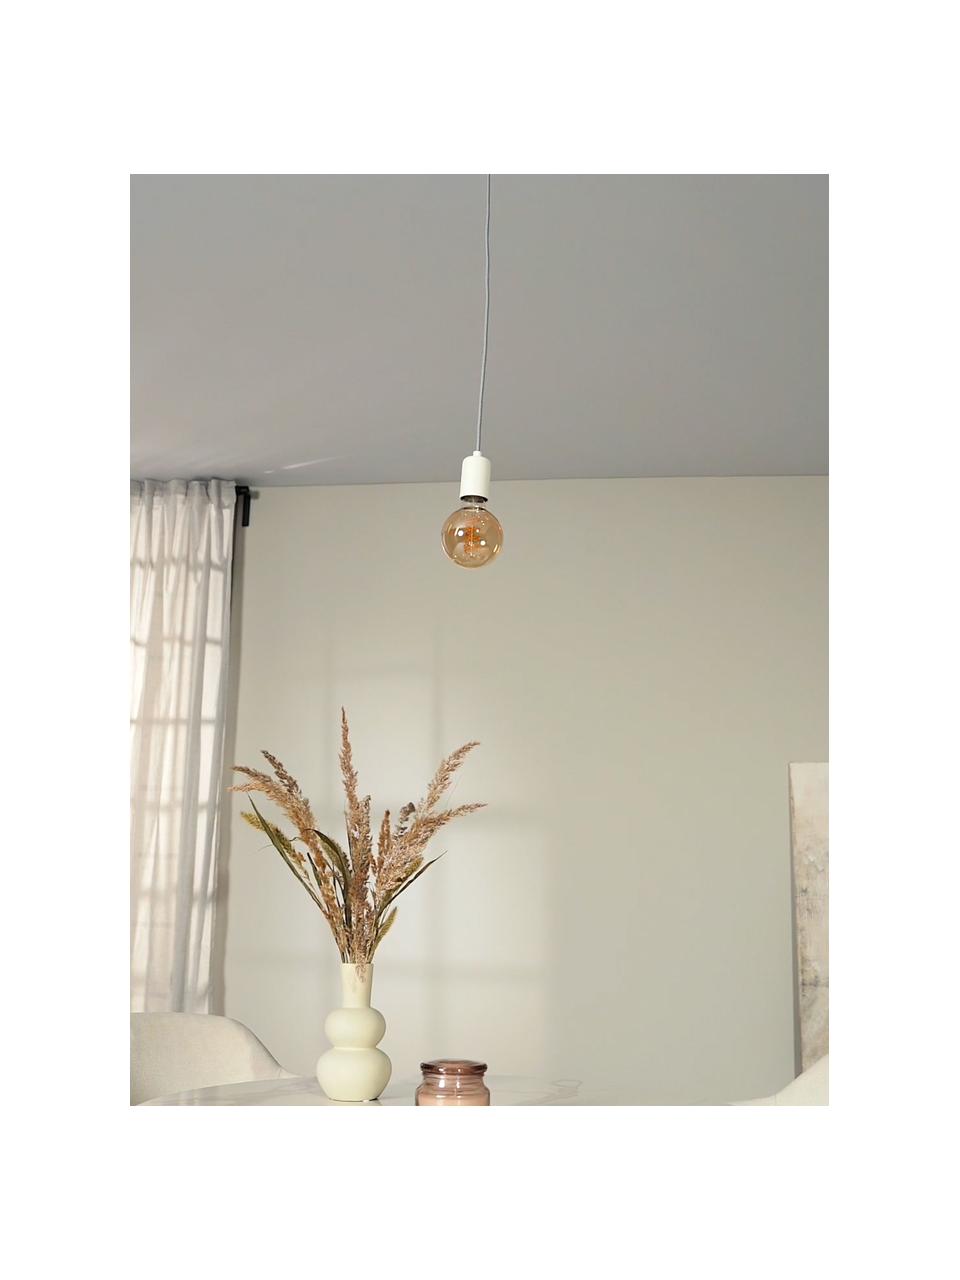 Lámpara de techo pequeña Trey, Anclaje: metal con pintura en polv, Cable: cubierto en tela, Blanco, Ø 10 x Al 8 cm